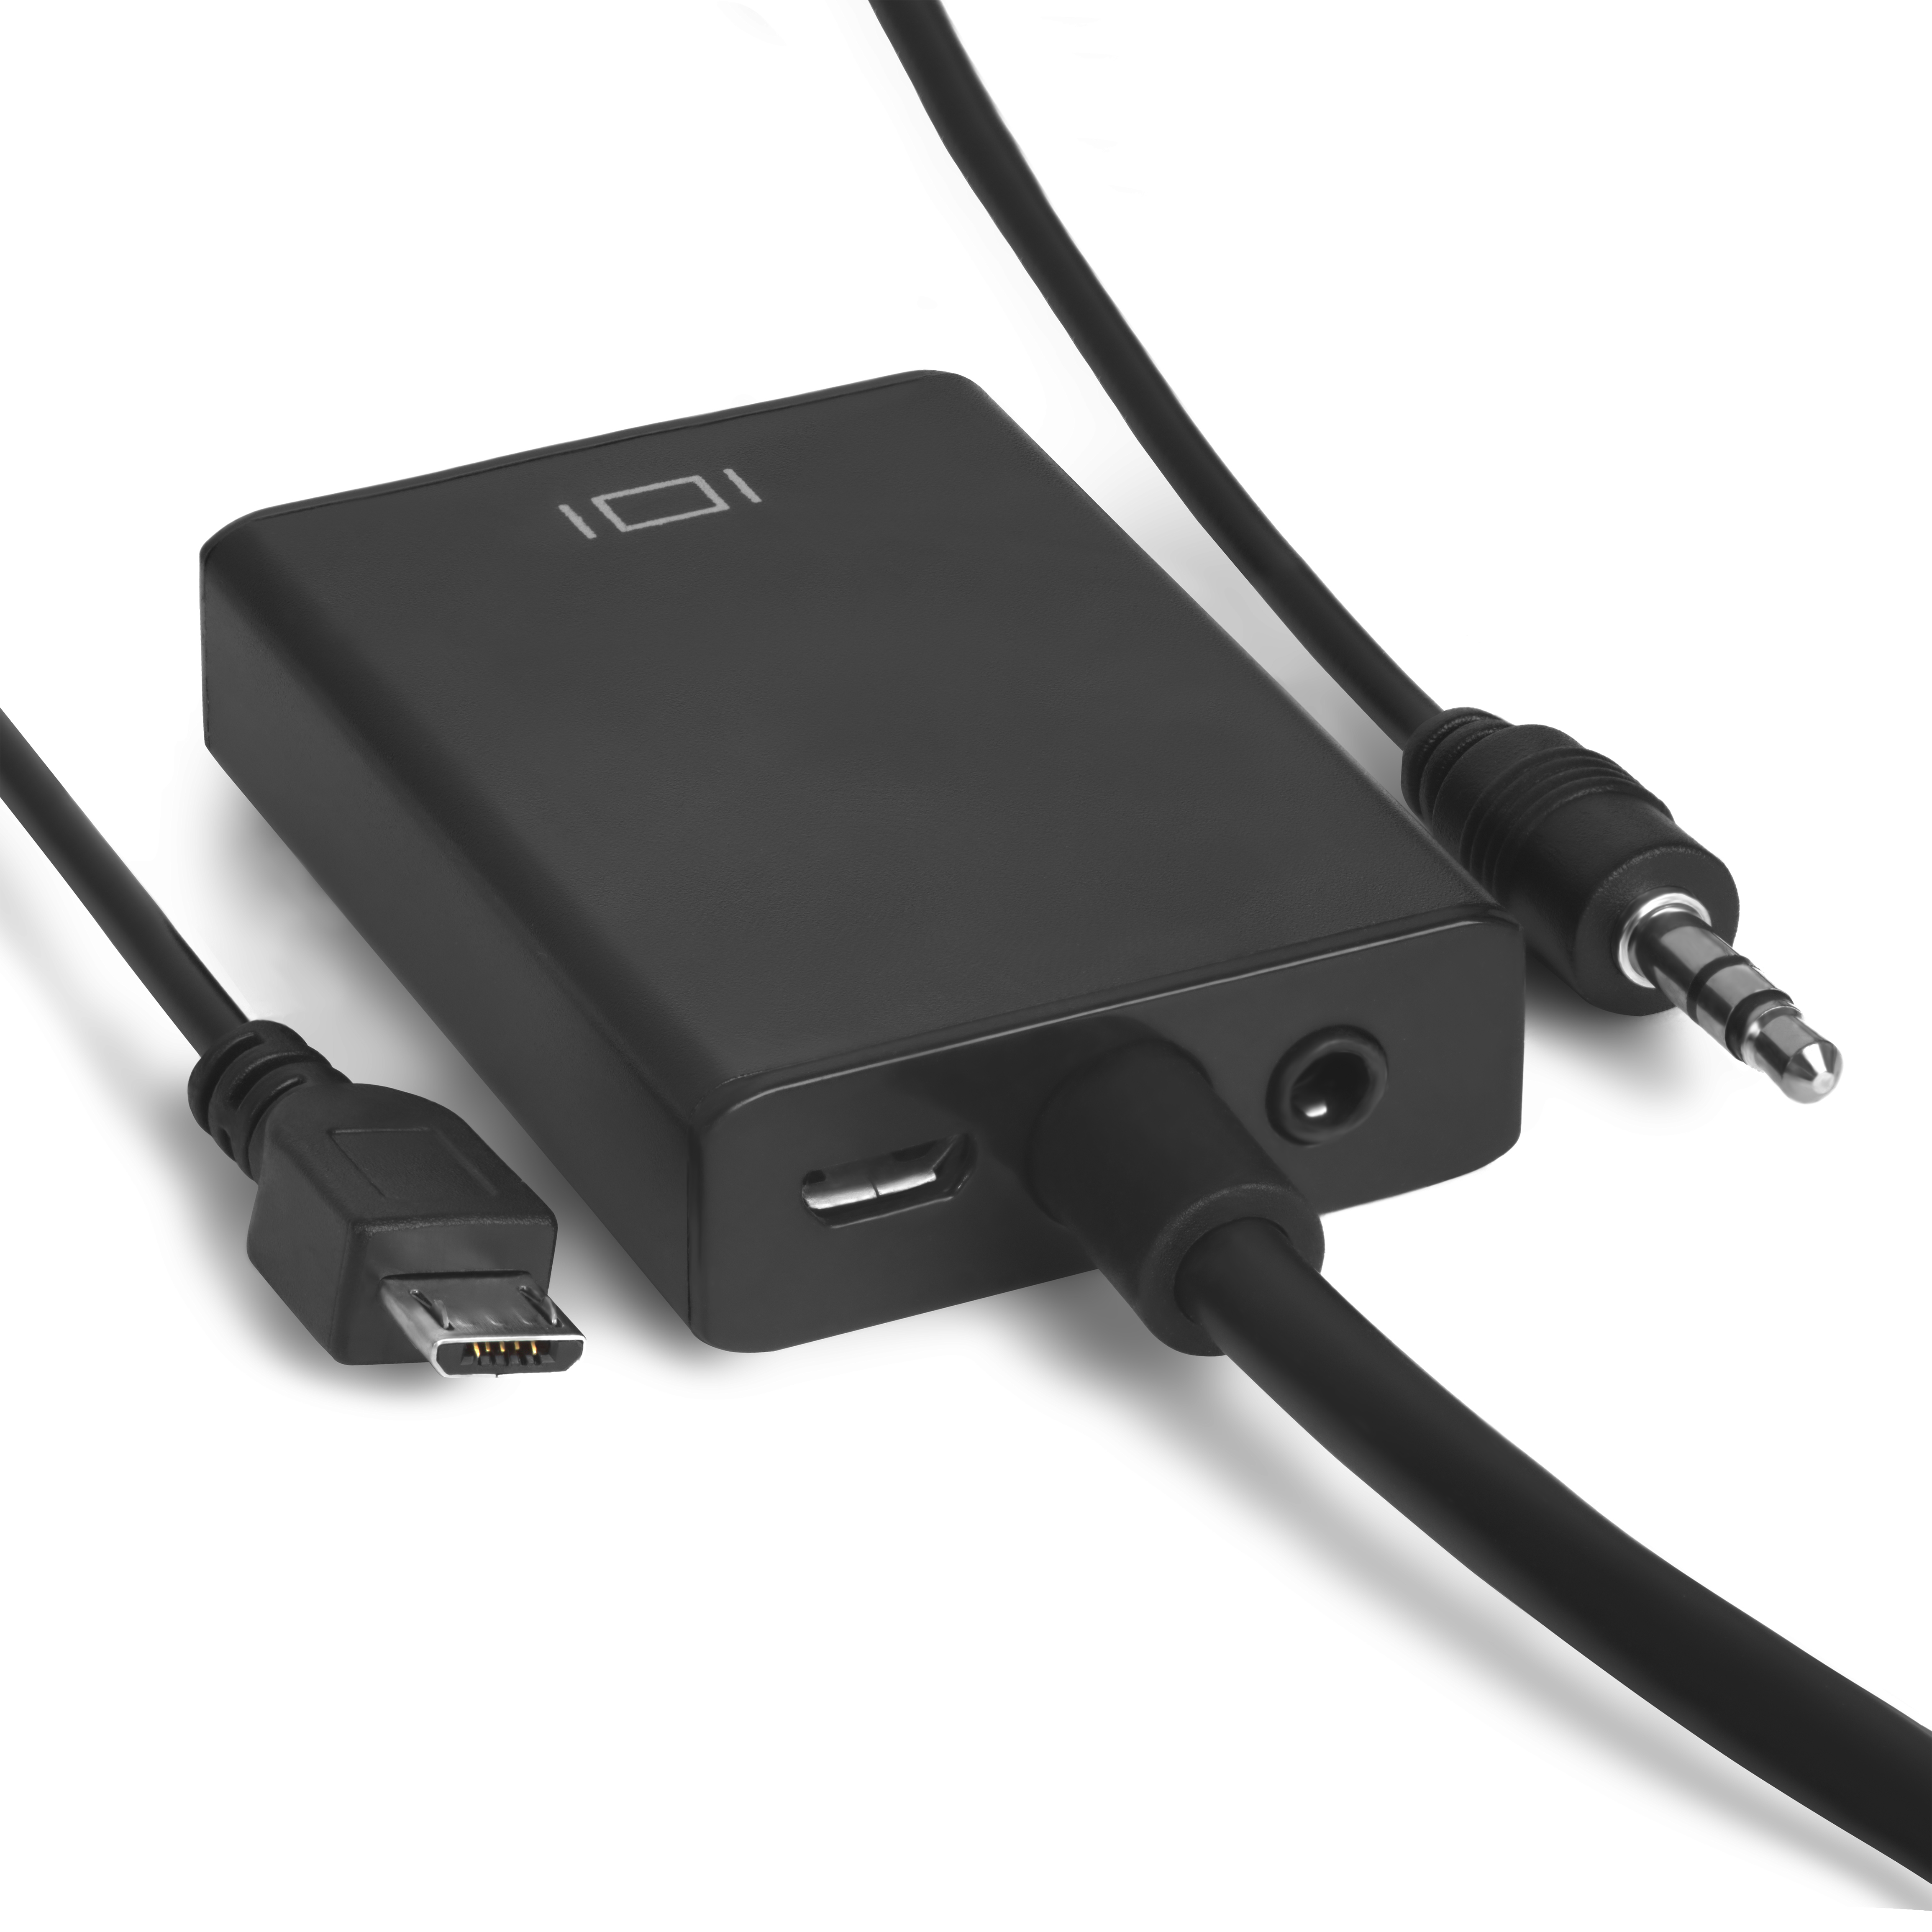 Конвертер переходник HDMI v1.4 к VGA + audio + micro USB для доп.питания для компьютера ноутбука монитора